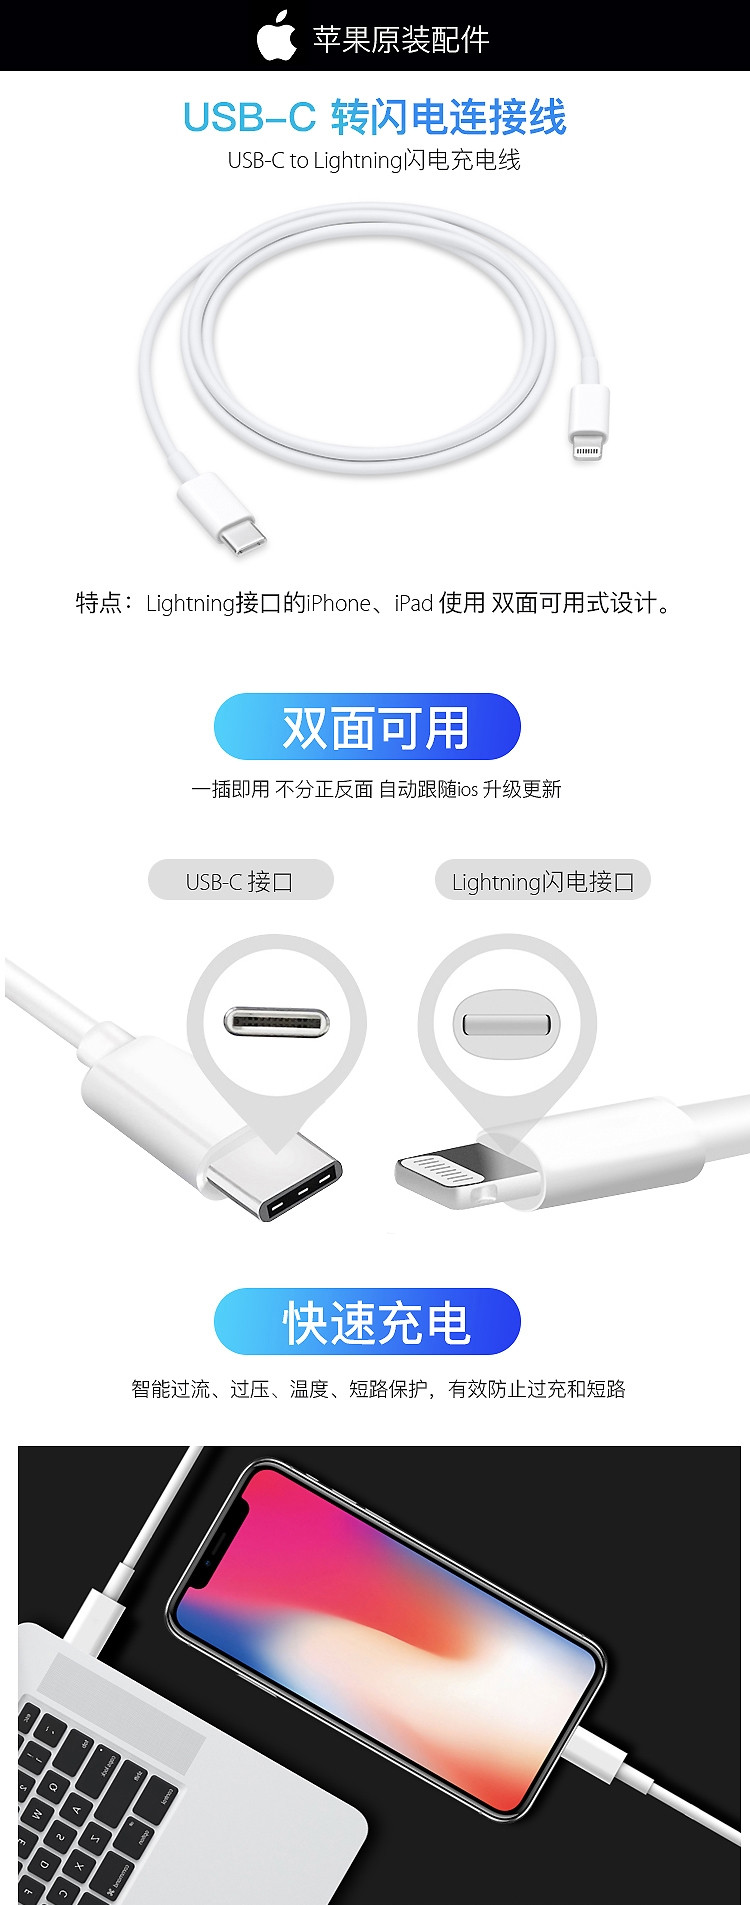 苹果/APPLE USB-C/雷霆3转Lightning/闪电连接线 快充线 手机平板 数据线 充电线